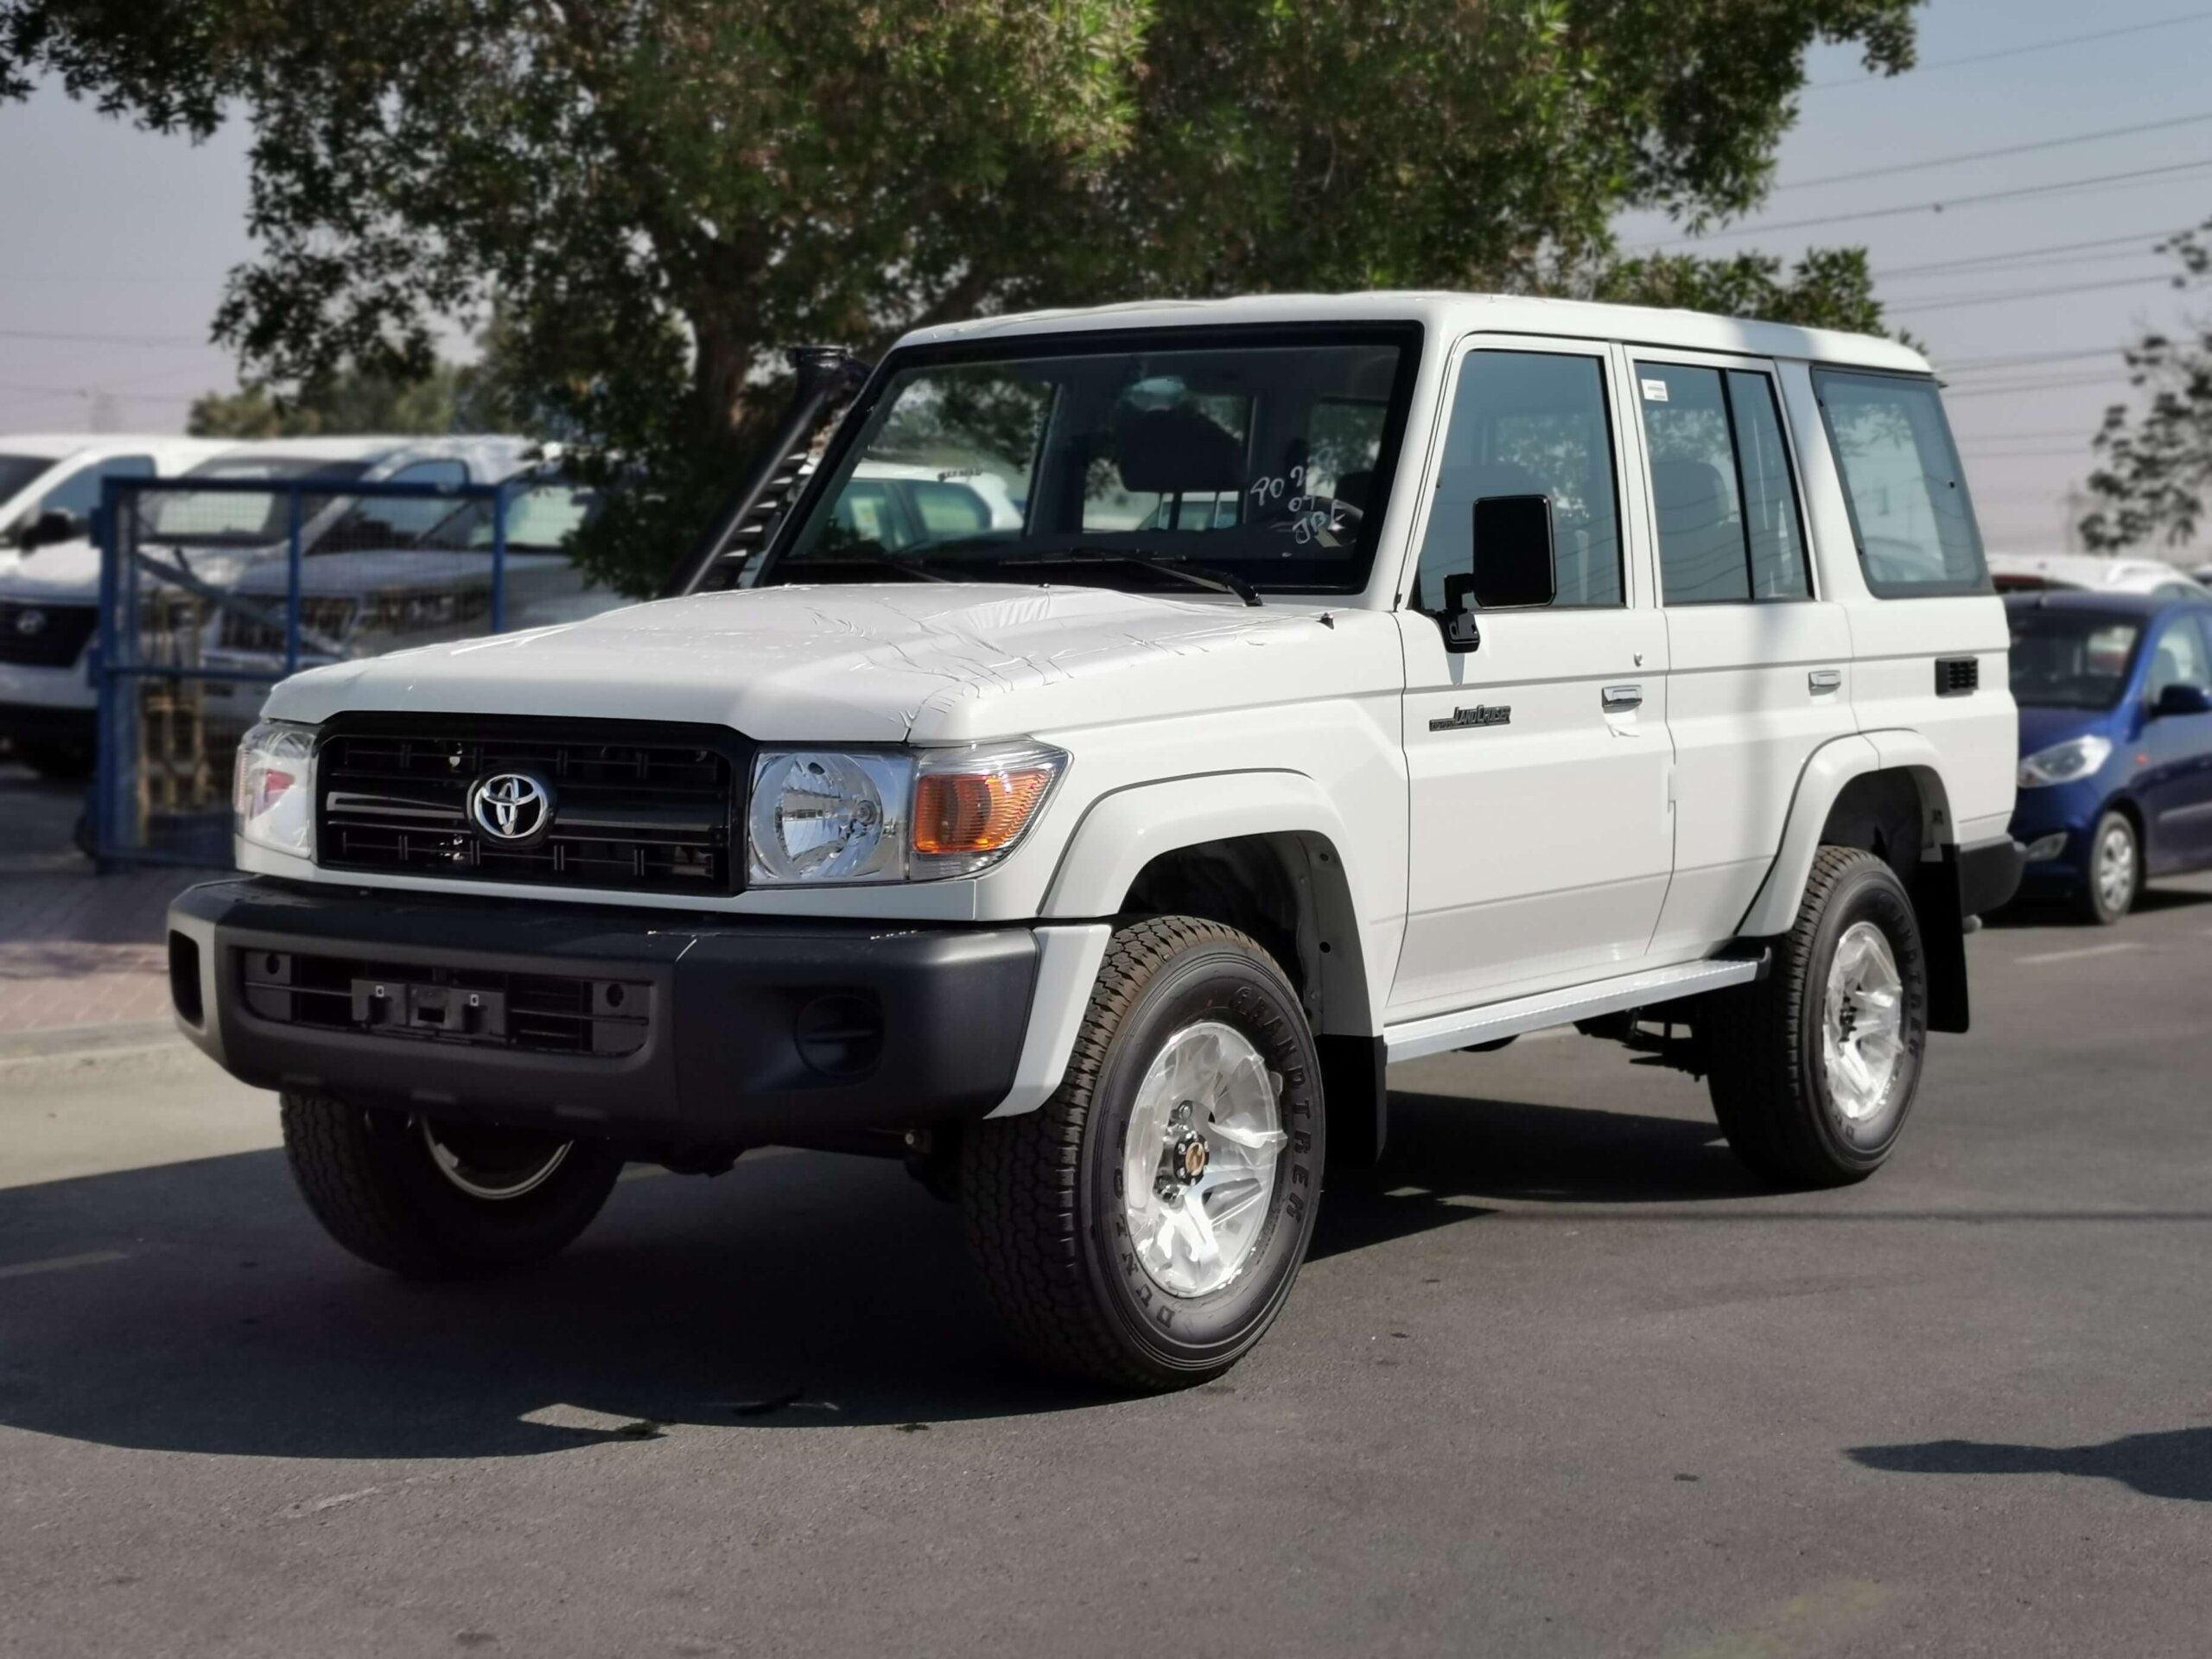 Toyota LandCruiser LX76 2022 4.2D White Full Front Left Profile